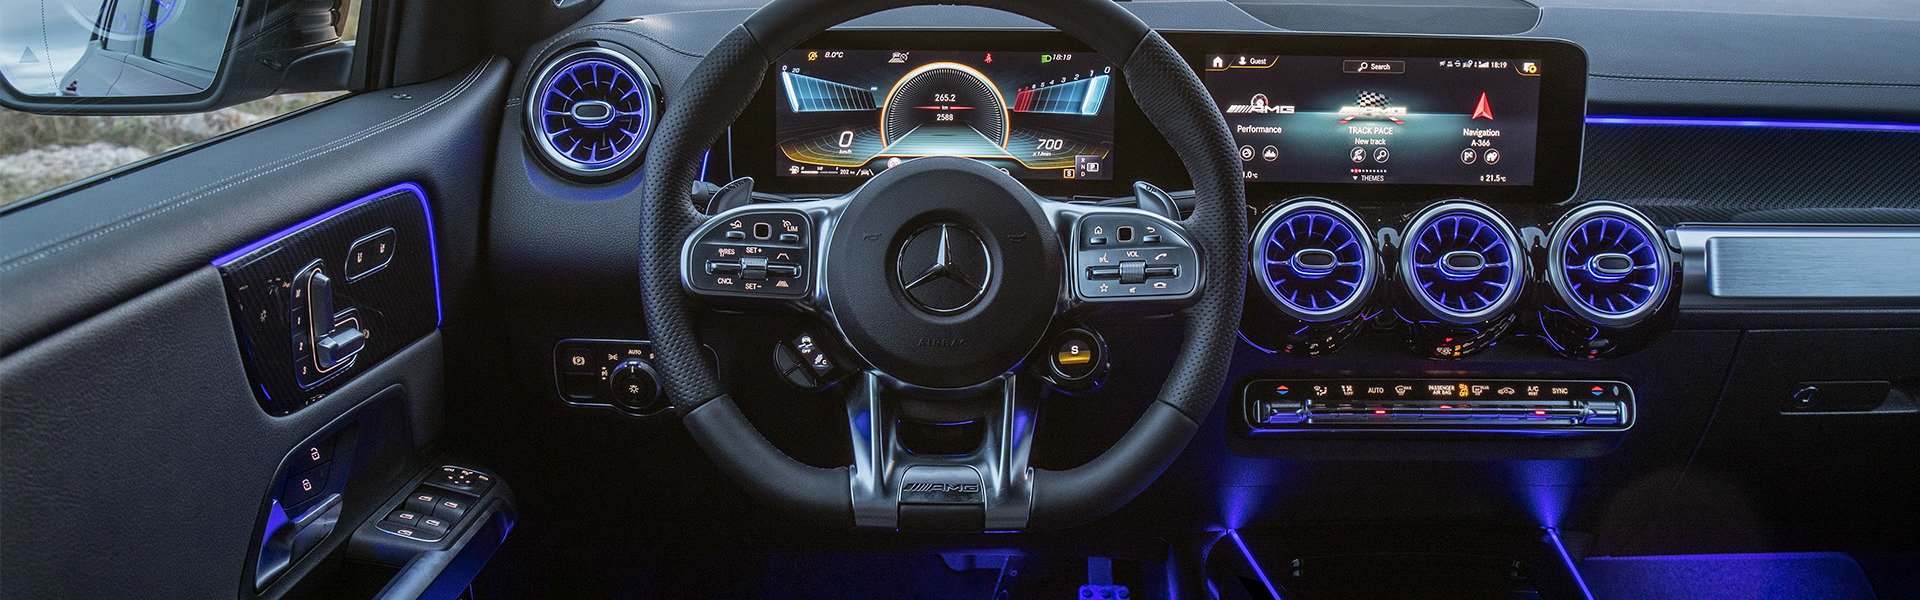 Mercedes-AMG GLB внедорожник